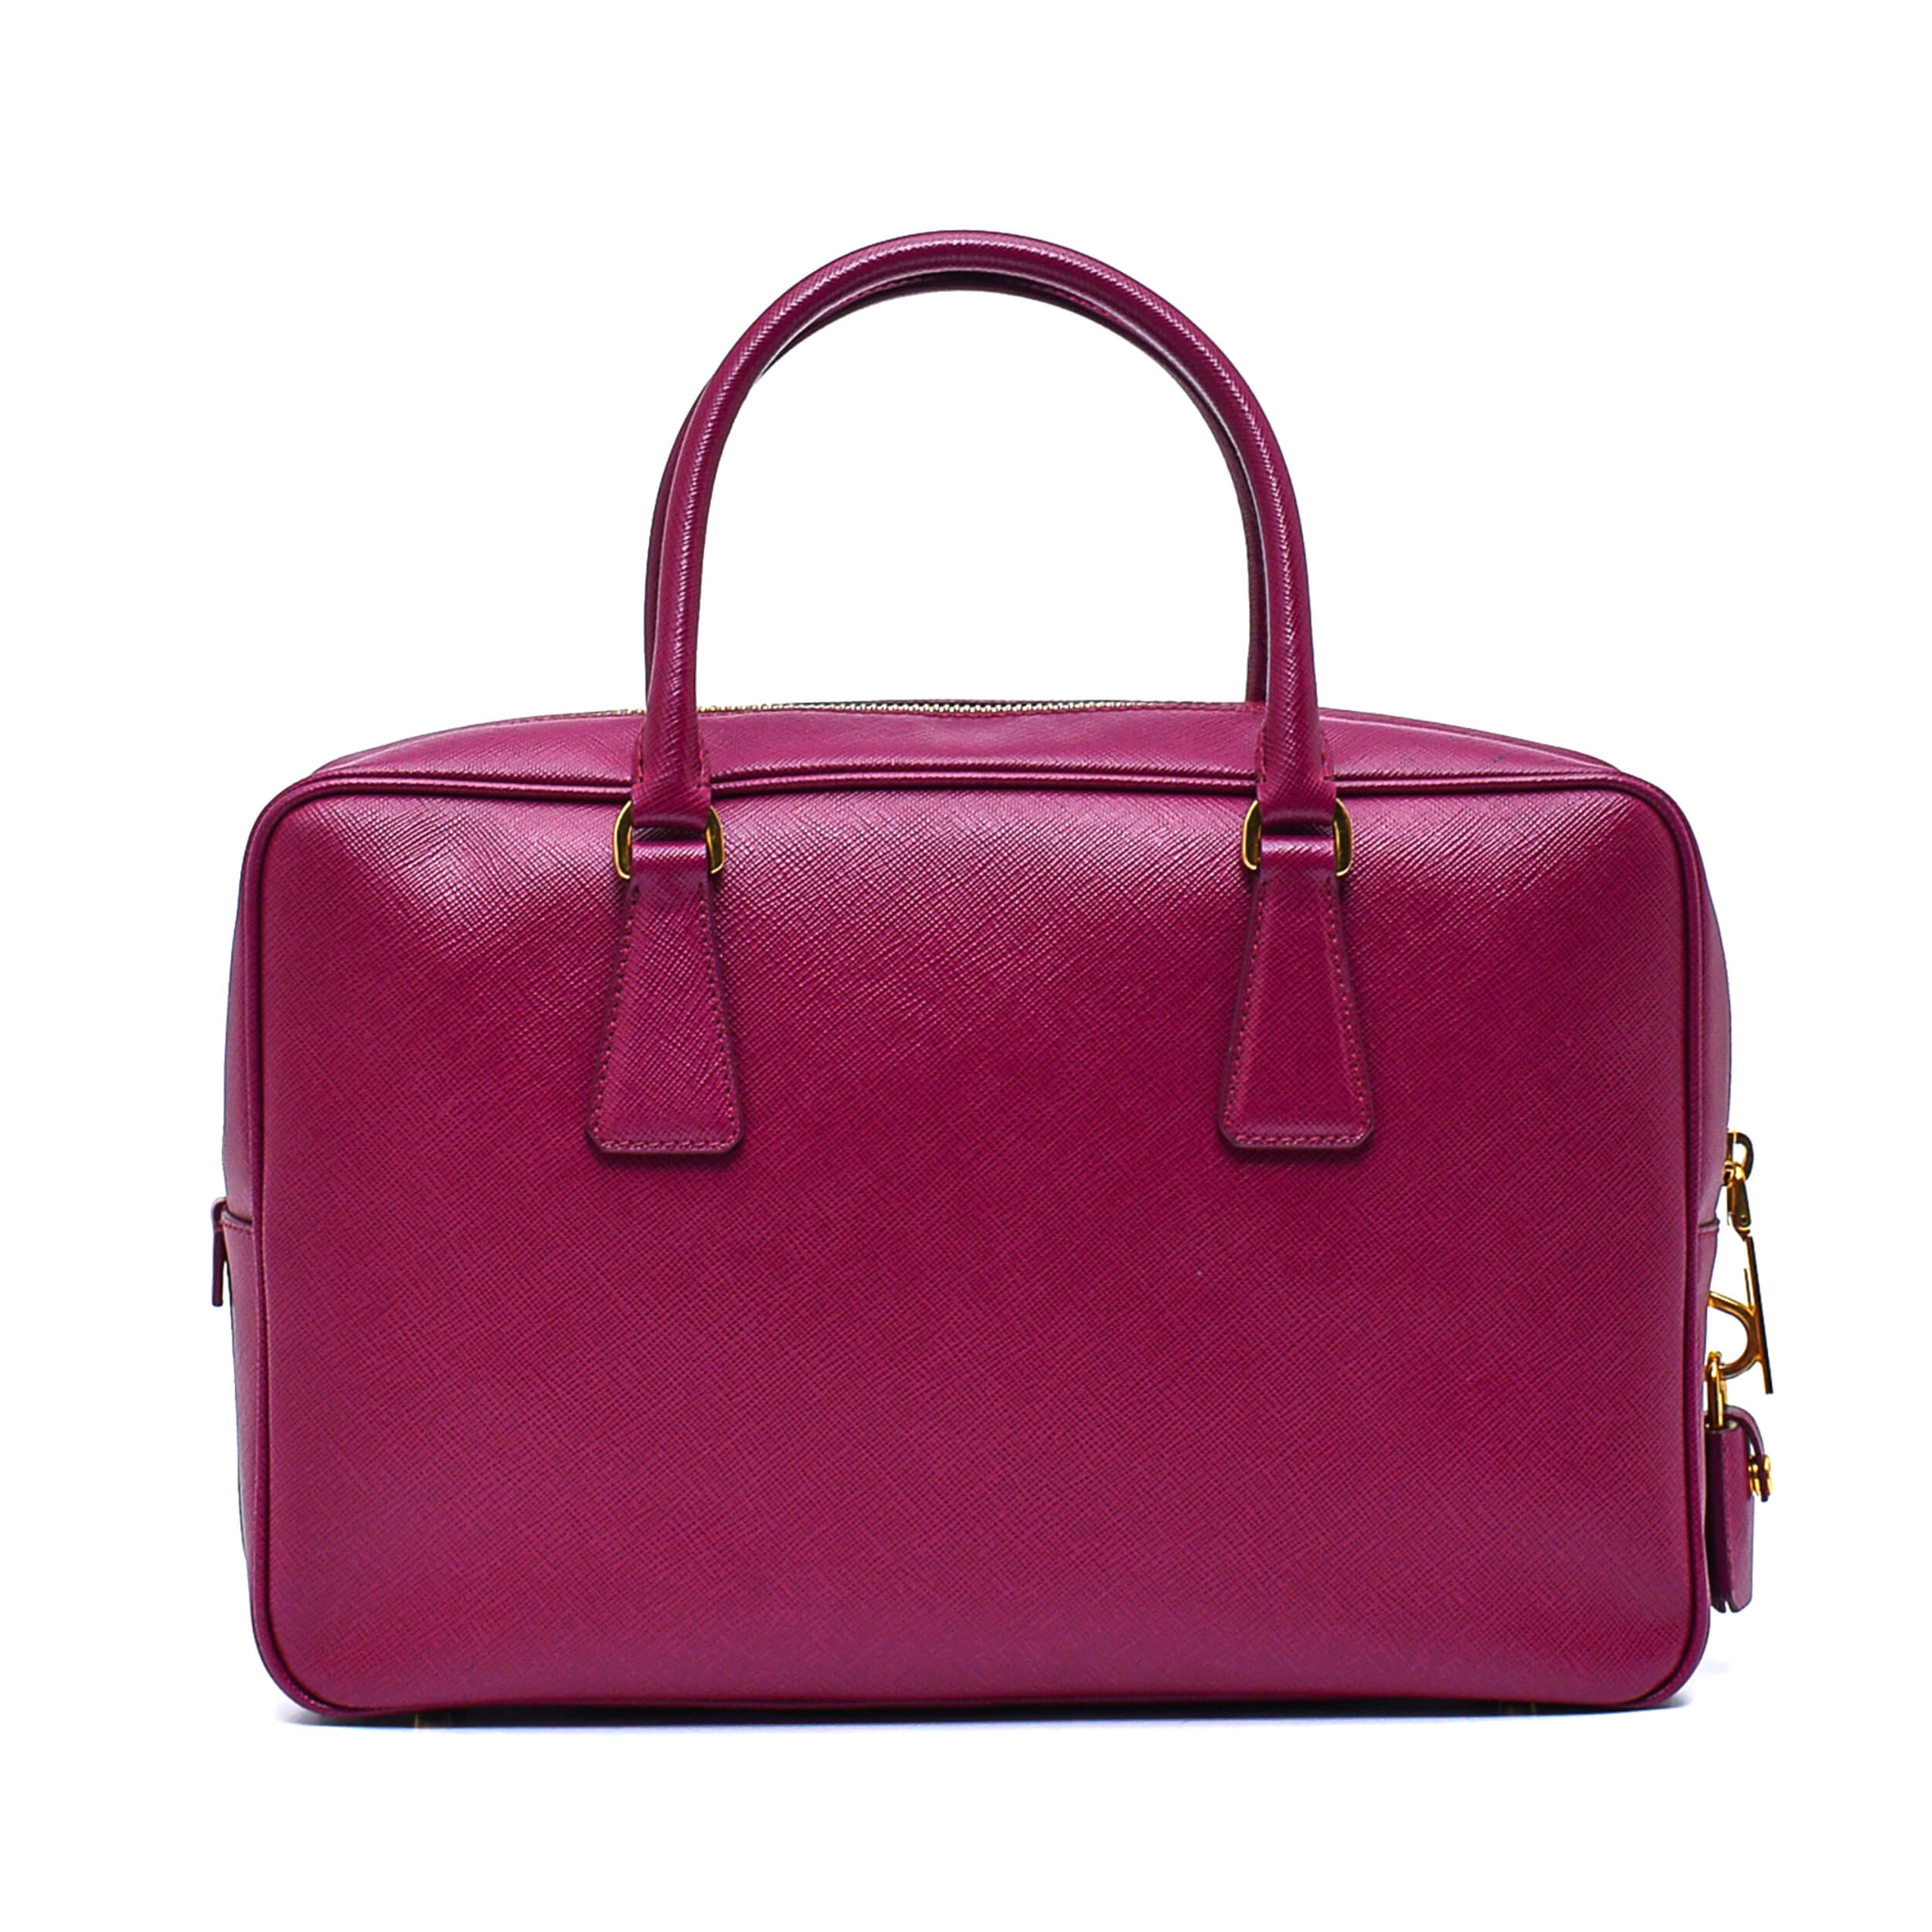 Prada - Purple Saffiano Leather Handbag